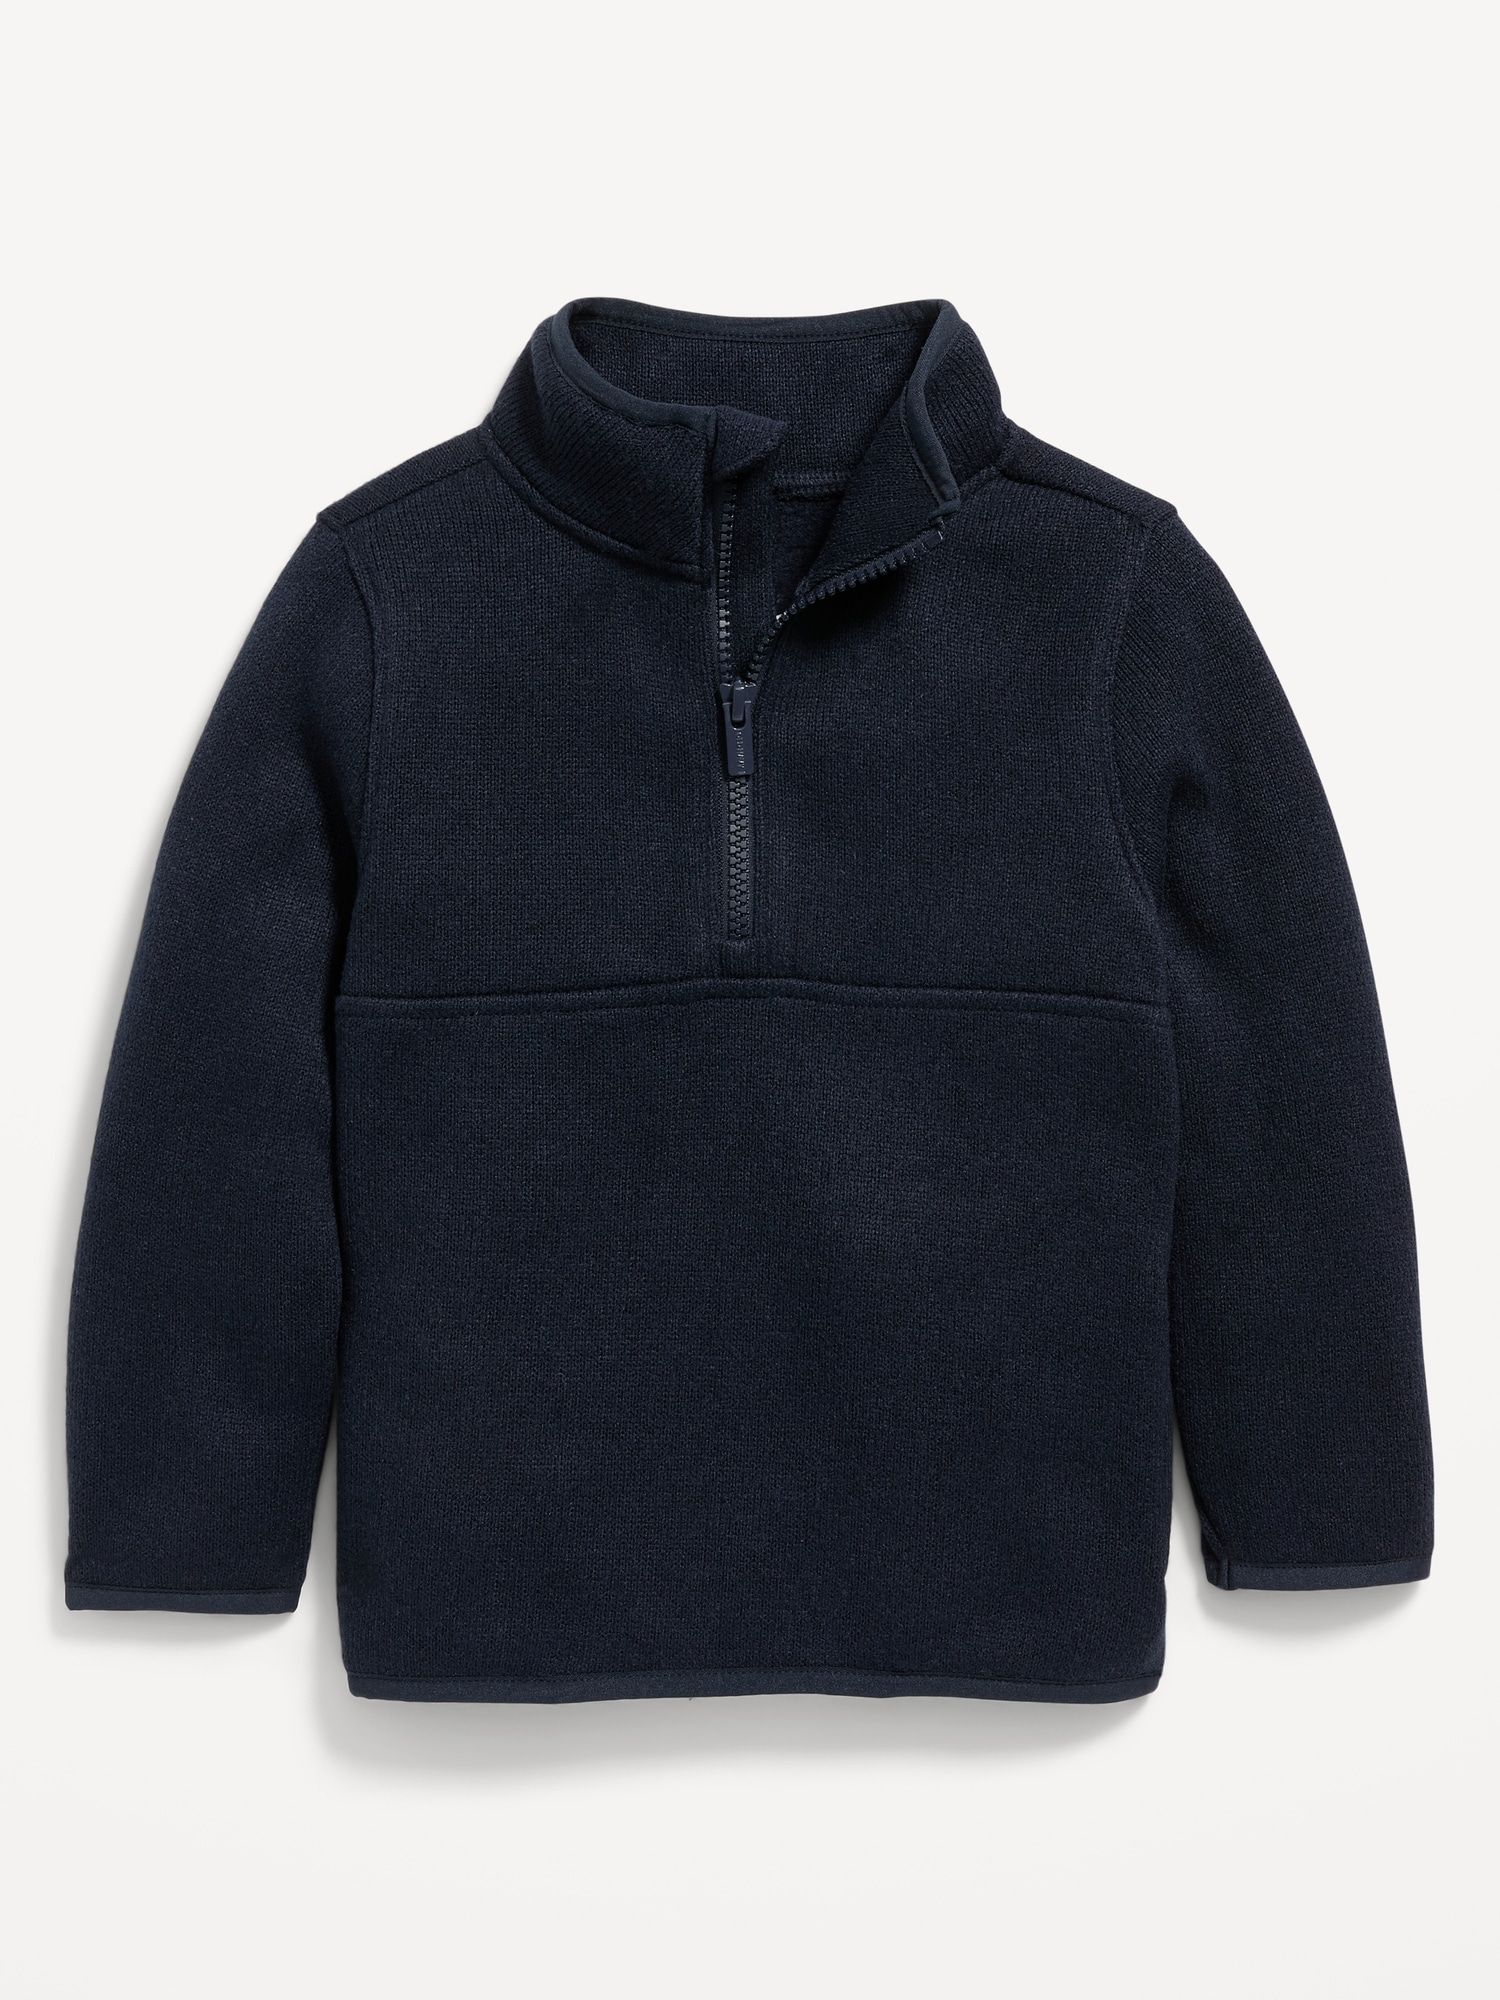 Half Zip Fleece Sweatshirt Navy - Unisex